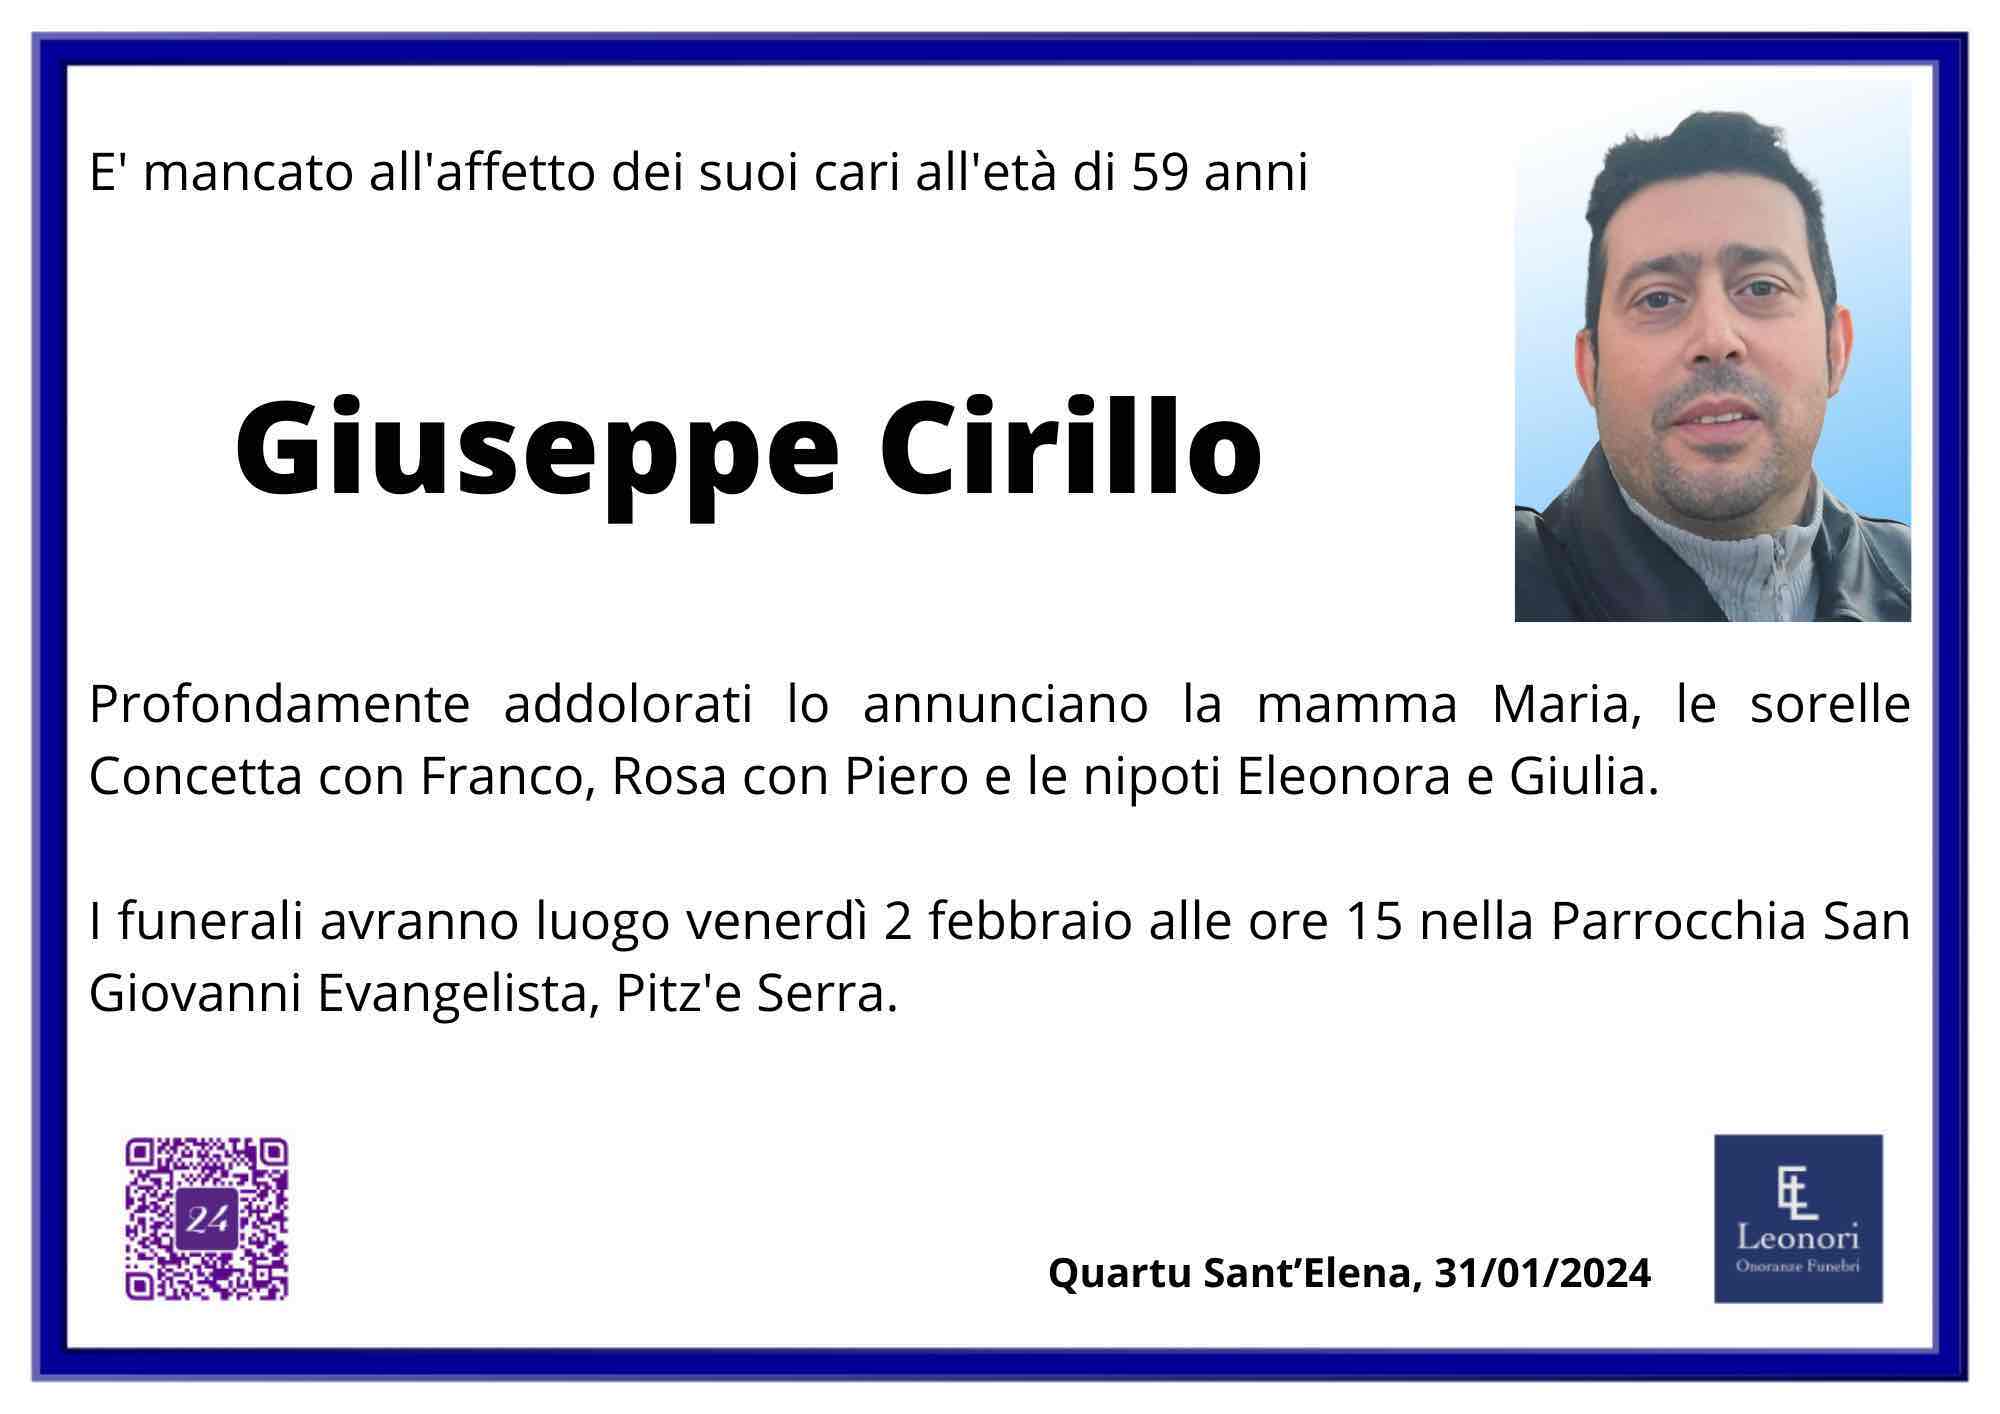 Giuseppe Cirillo